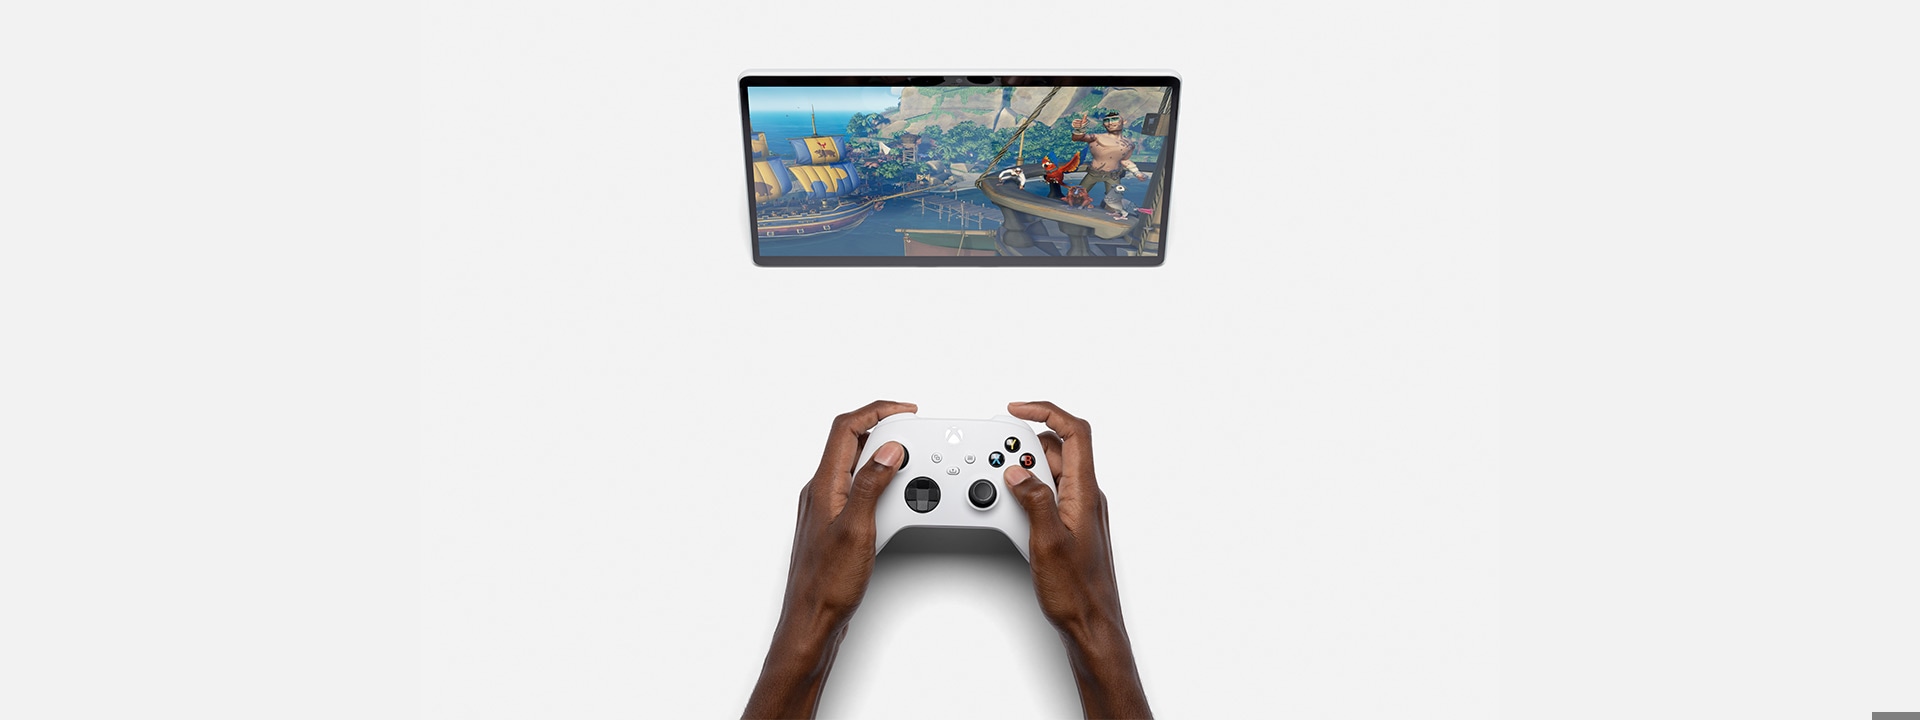 جهاز Surface Pro X معروض مع تطبيق Xbox وأداة تحكم Xbox.